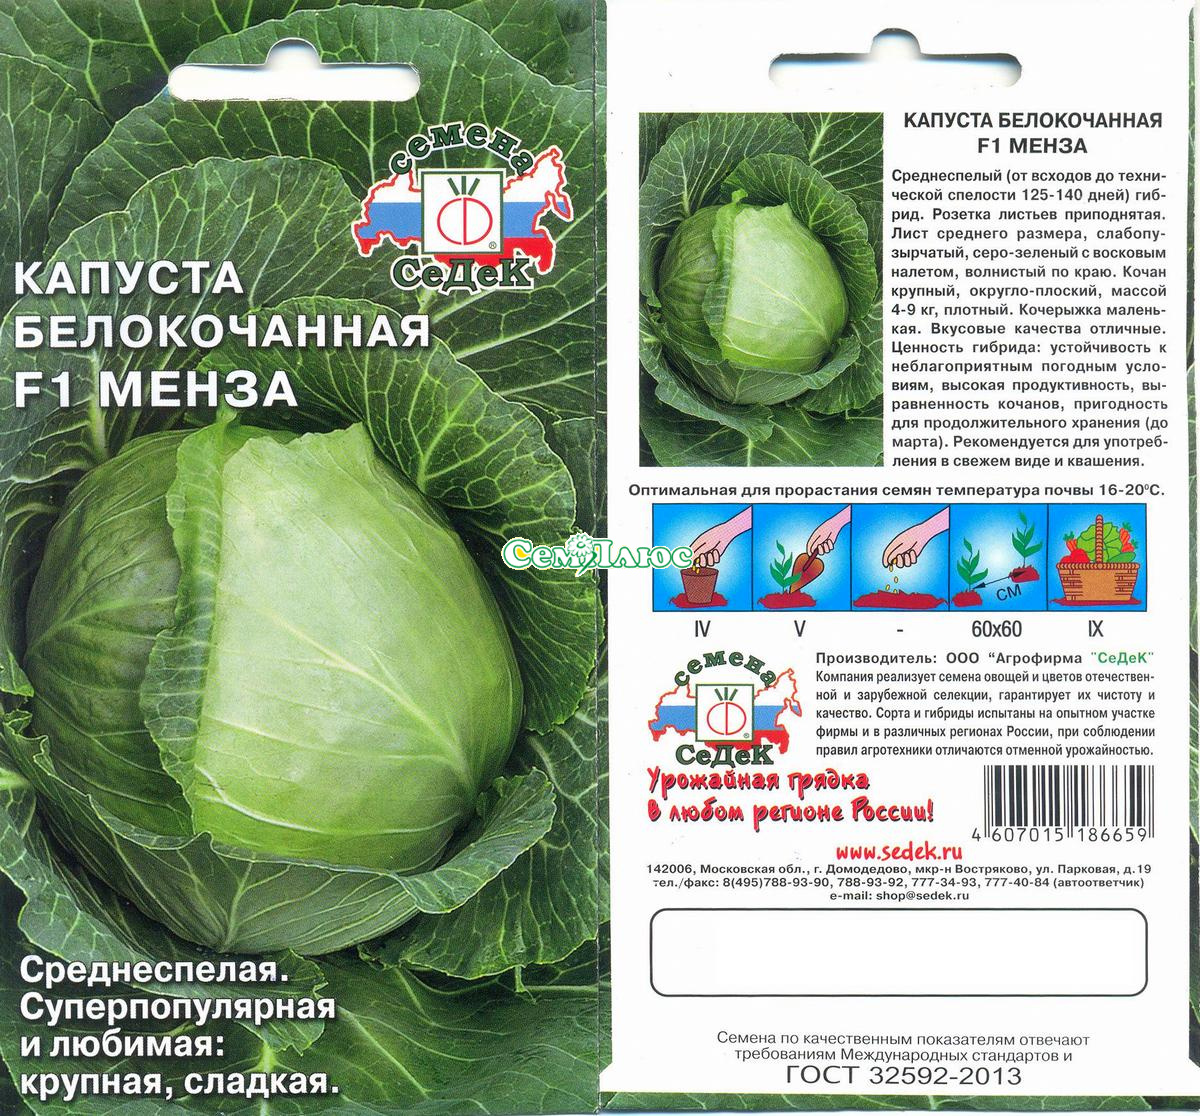 Описание белокочанной капусты Слава, выращивание и борьба с вредителями